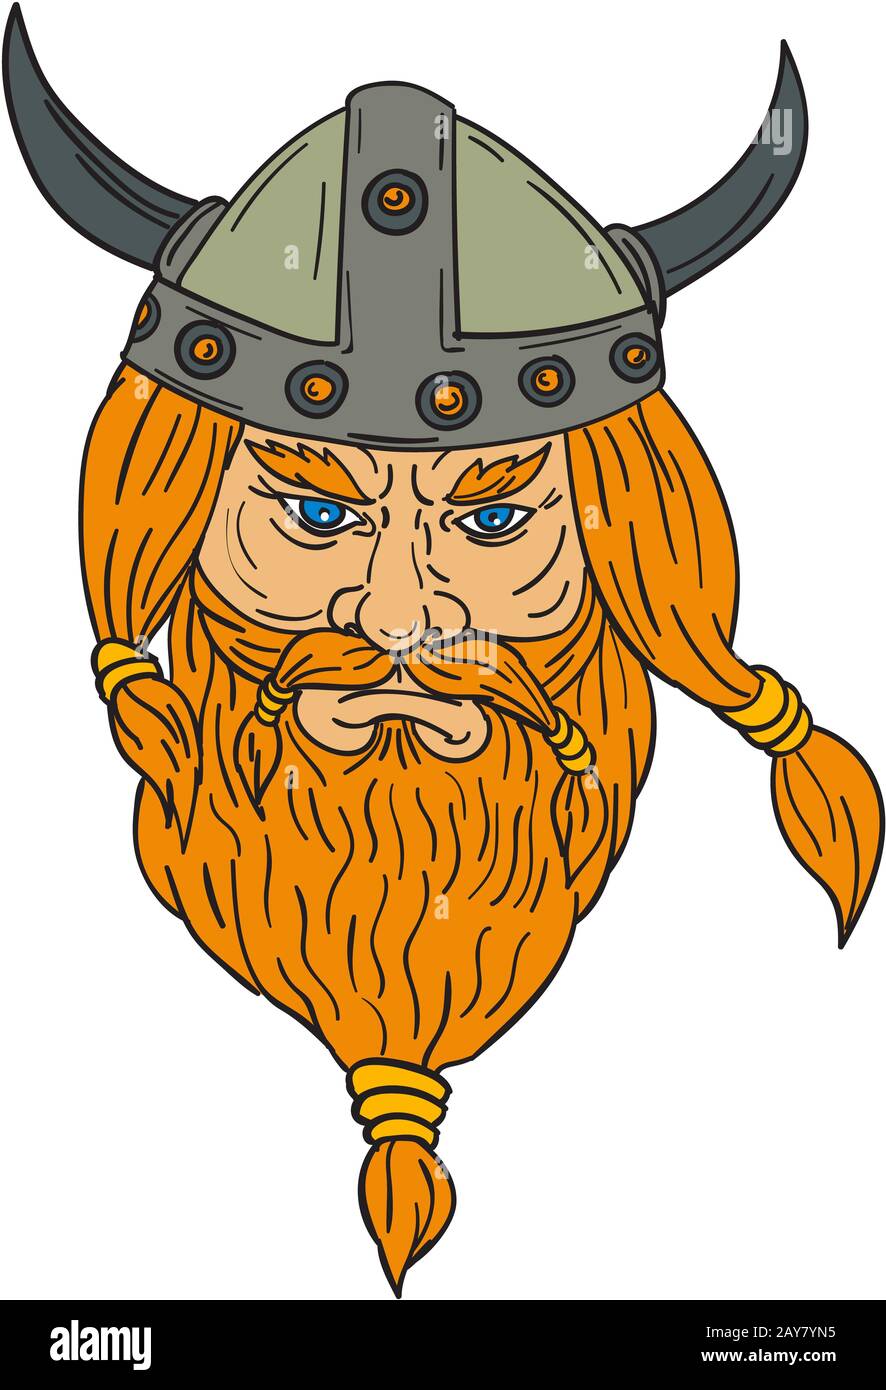 Dessin de la tête de guerrier viking Norseman Banque D'Images